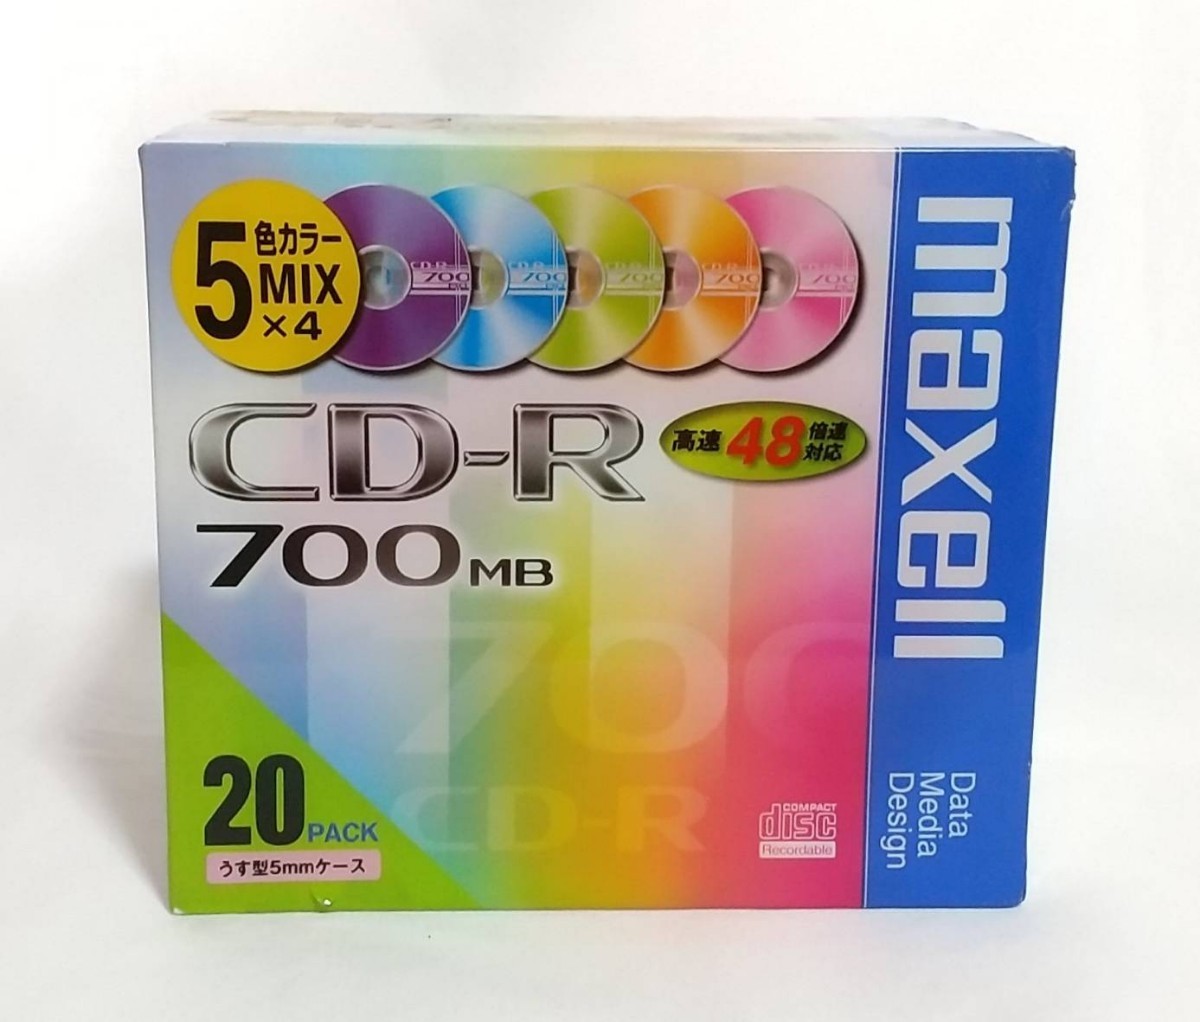 【未開封・長期保管品】maxell CD-R 700MB 48倍速対応 5色カラーミックス20枚 5mmケース入 CDR700 マクセル_画像1